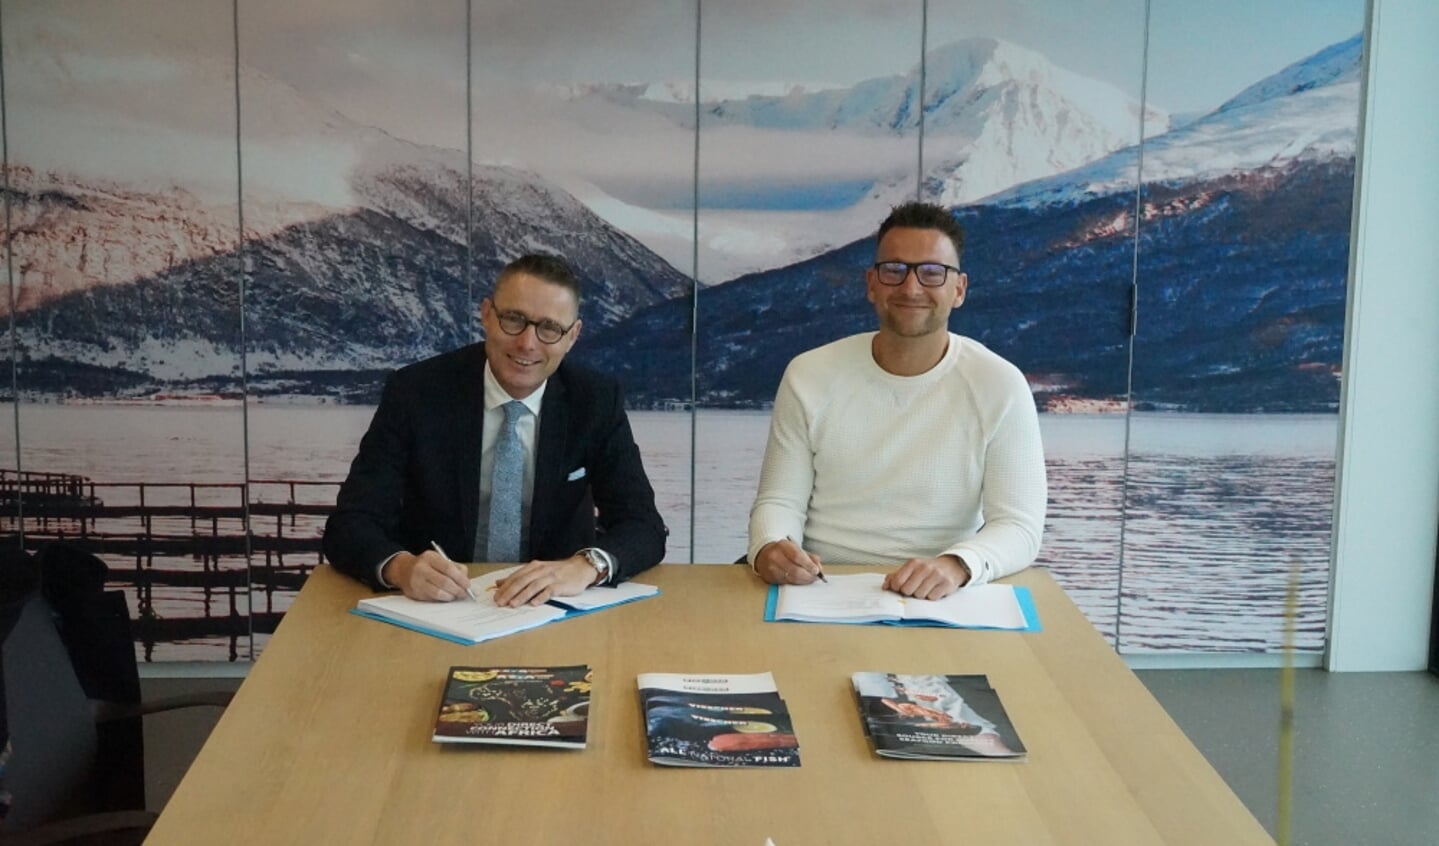  Wethouder Gerrit Post (l) en Tim Brouwer, ceo van Visscher Seafood, ondertekenen de overeenkomst.